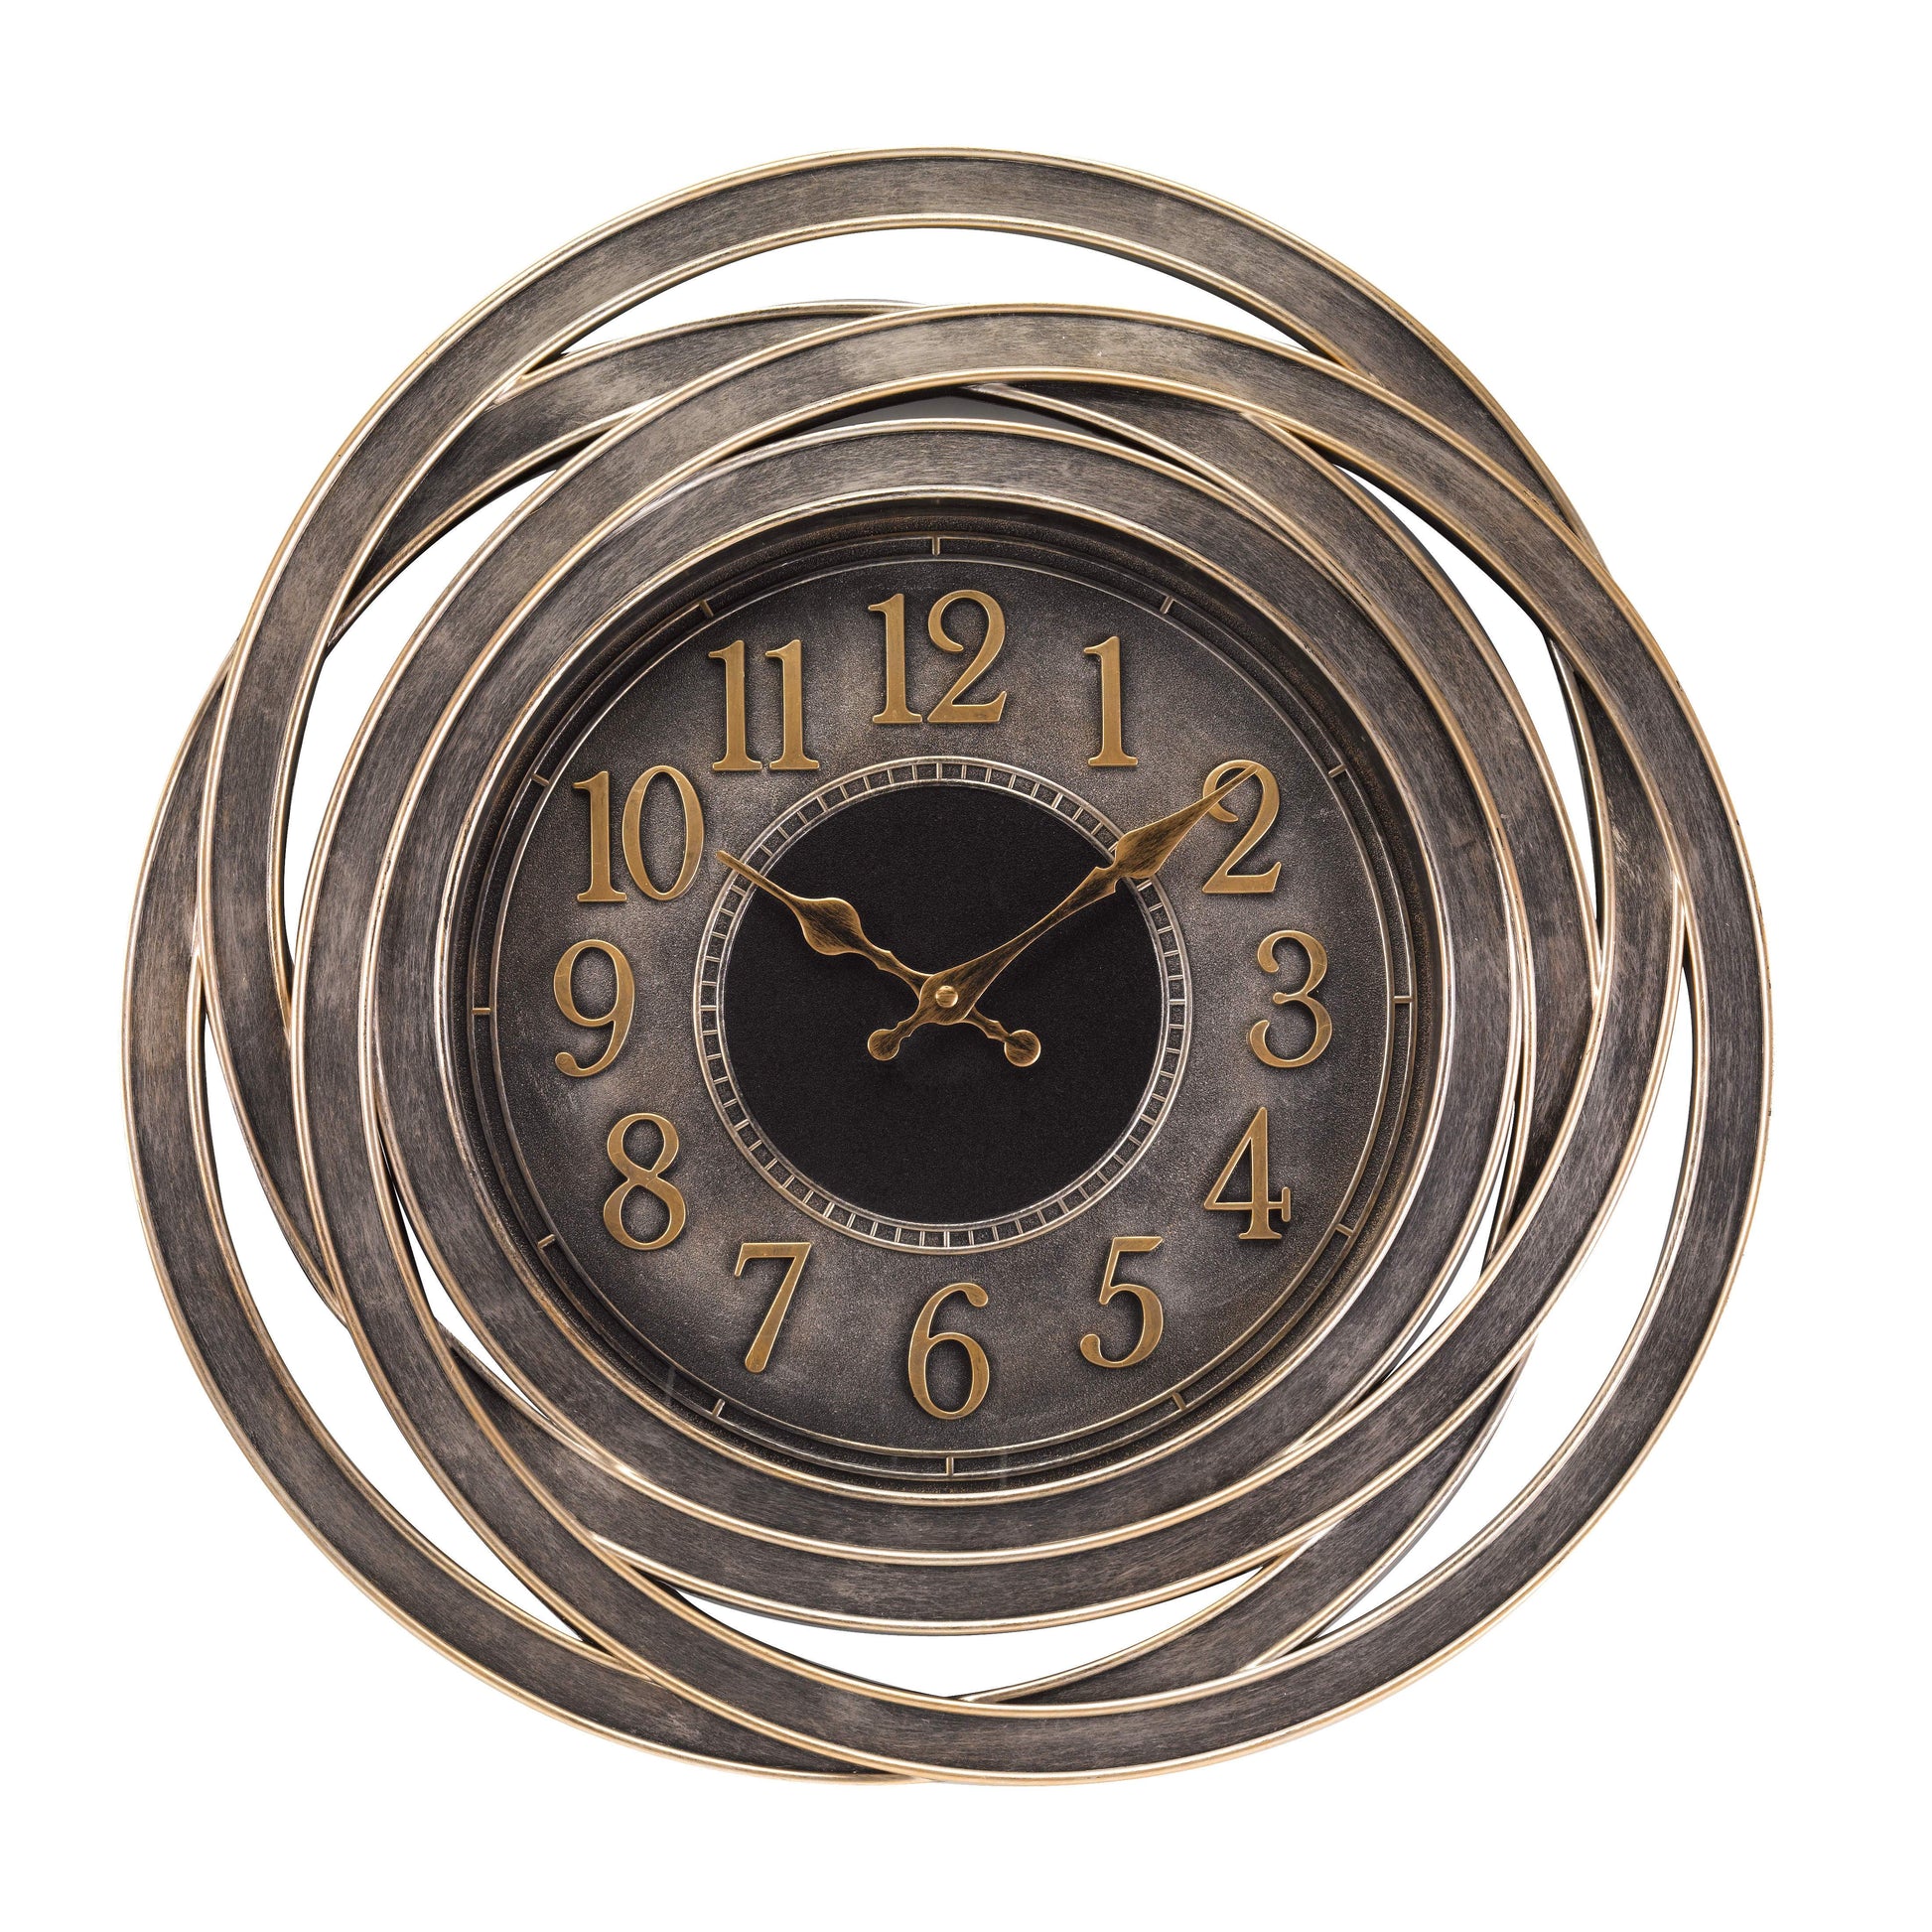 Štýlové nástenné hodiny Ripley s výraznými arabskými číslicami vhodné aj do exteriéru od OUTSIDE-IN designs